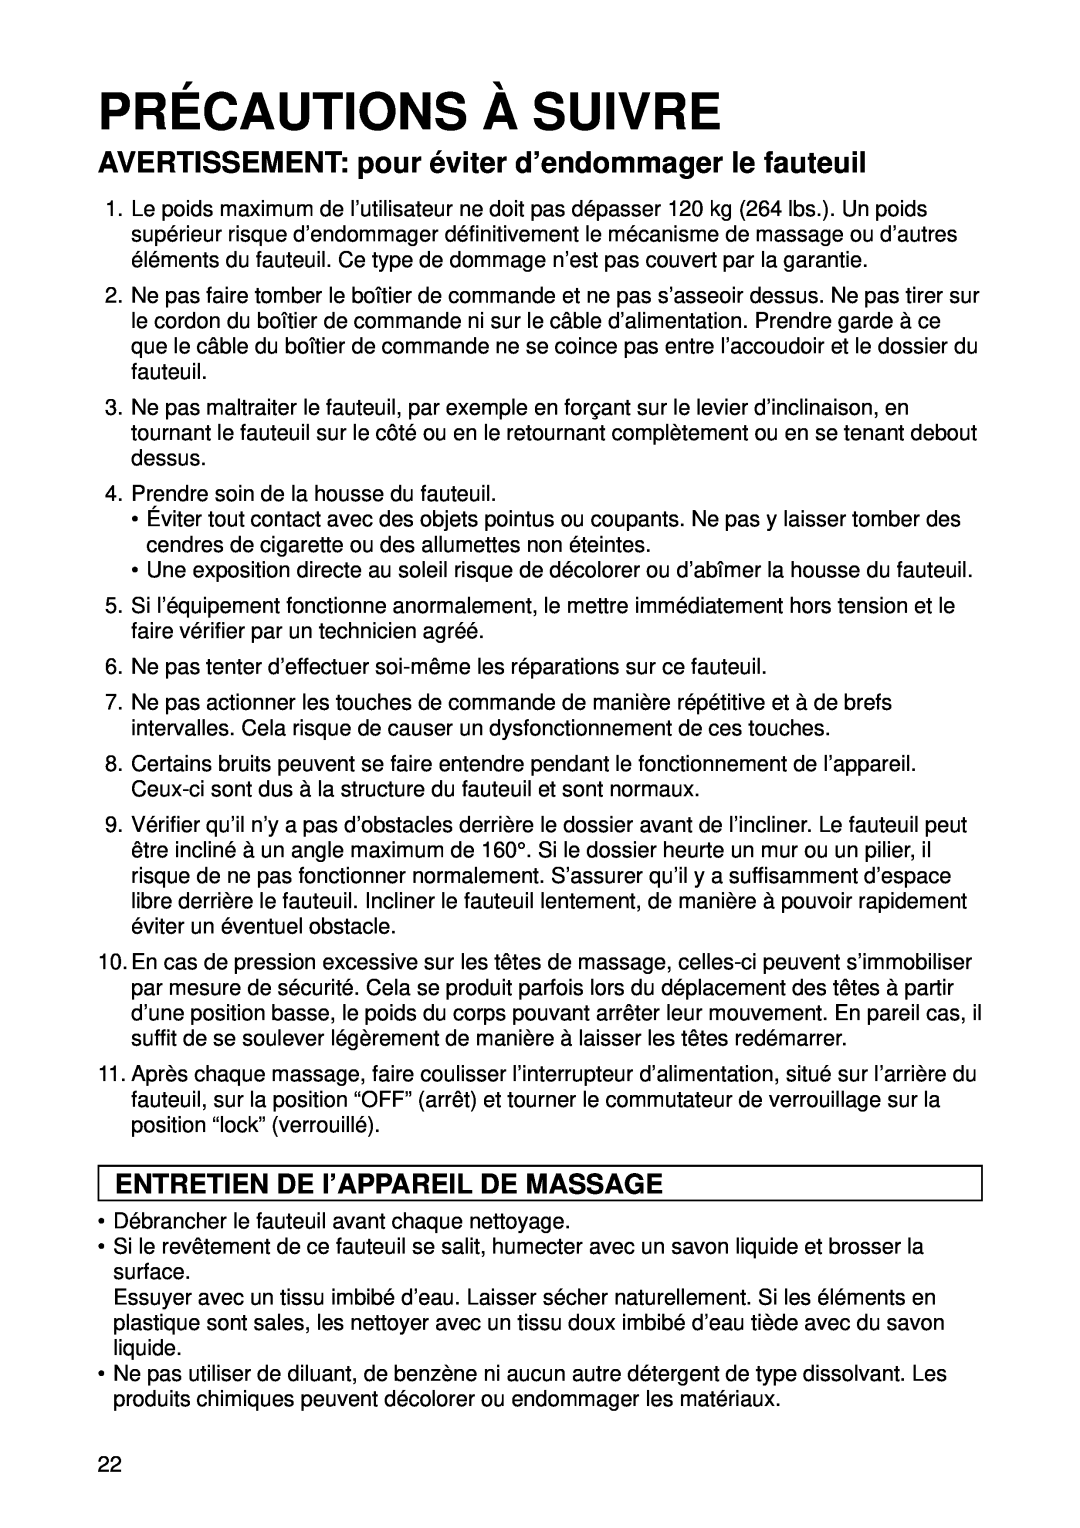 Panasonic EP1015 manuel dutilisation Pré Cautions À Suivre, Entretien De I’Appareil De Massage 